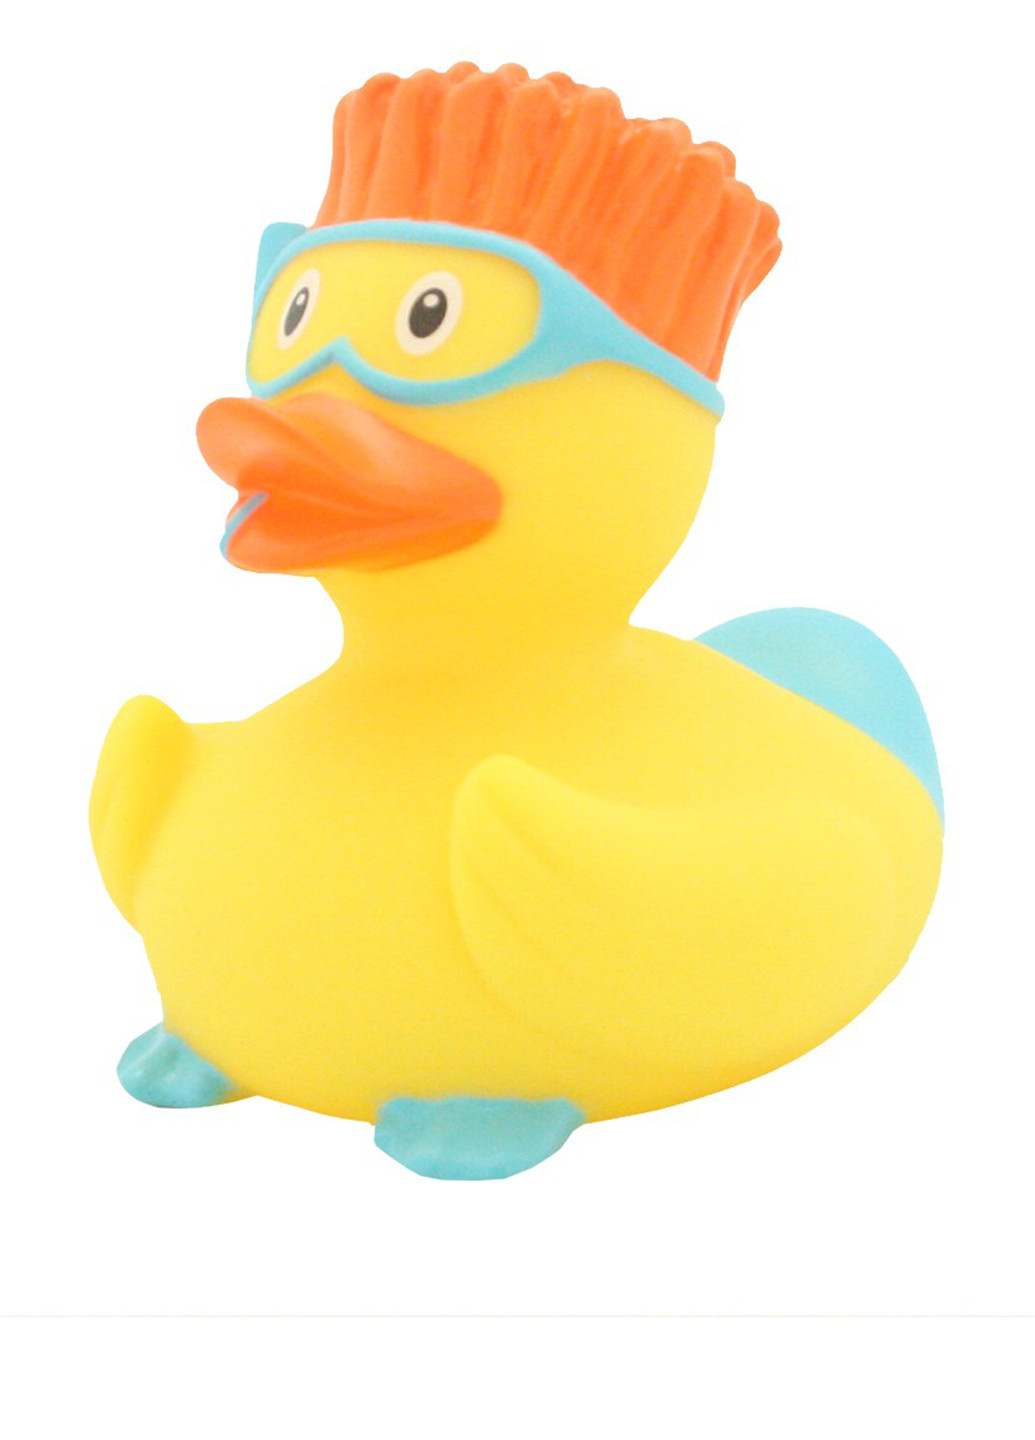 Игрушка для купания Утка Аквалангистка, 8,5x8,5x7,5 см Funny Ducks (250618796)